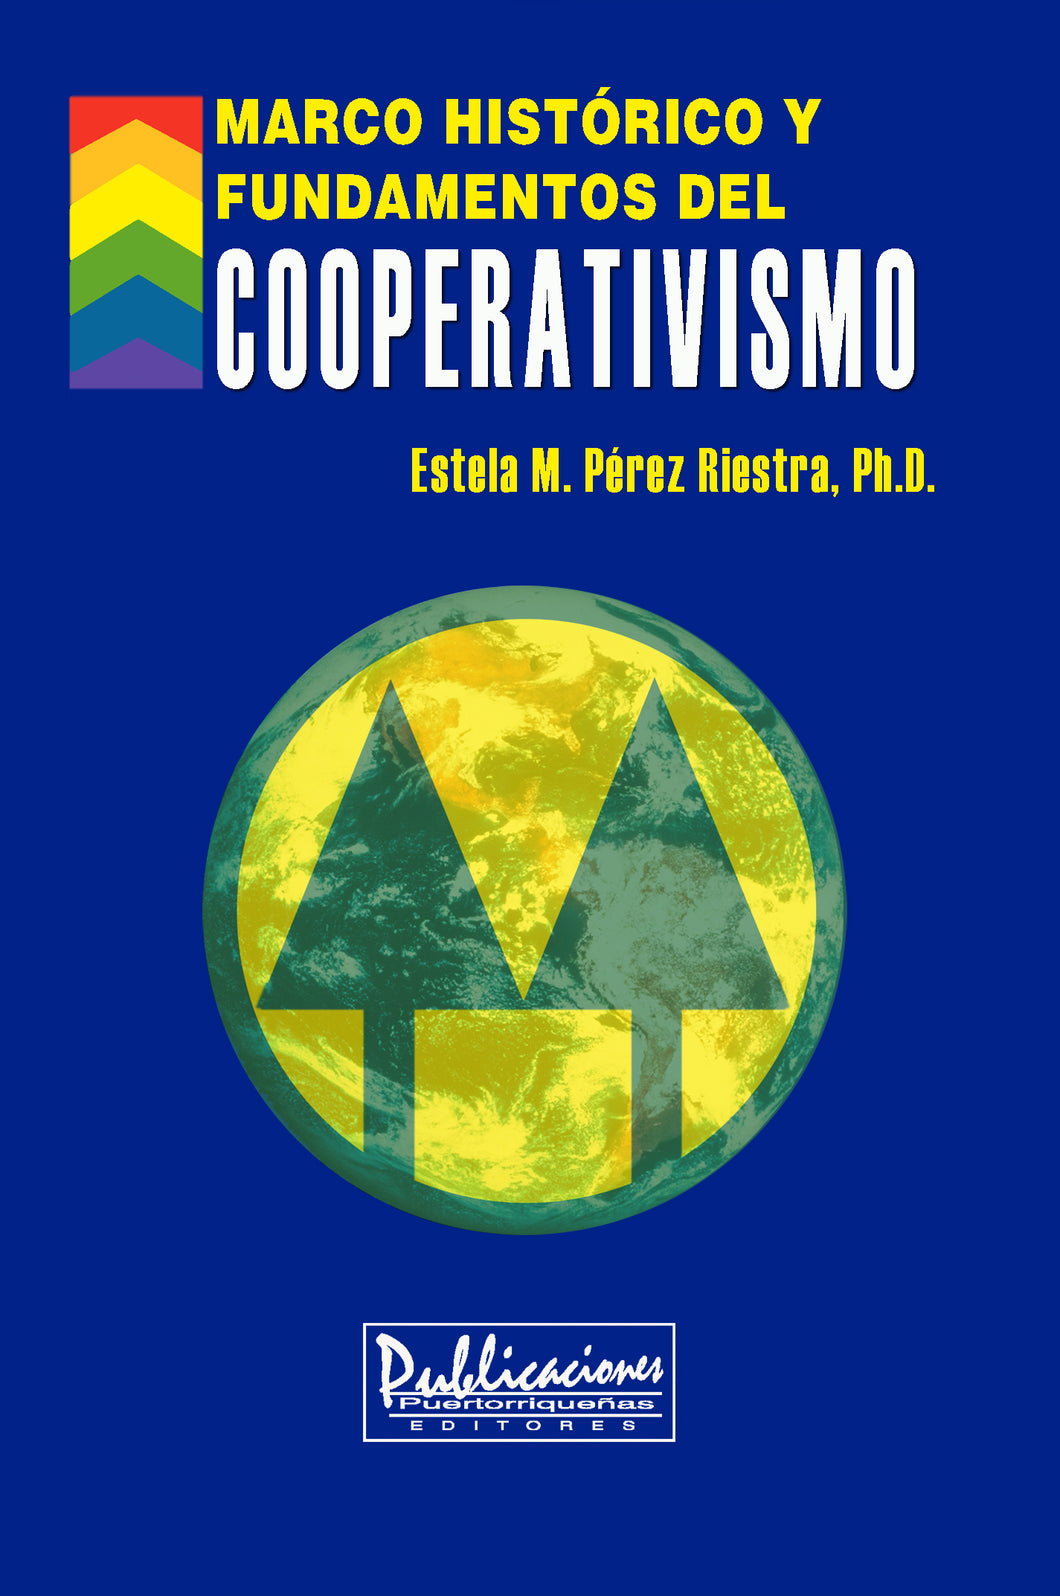 cooperativismo_libro